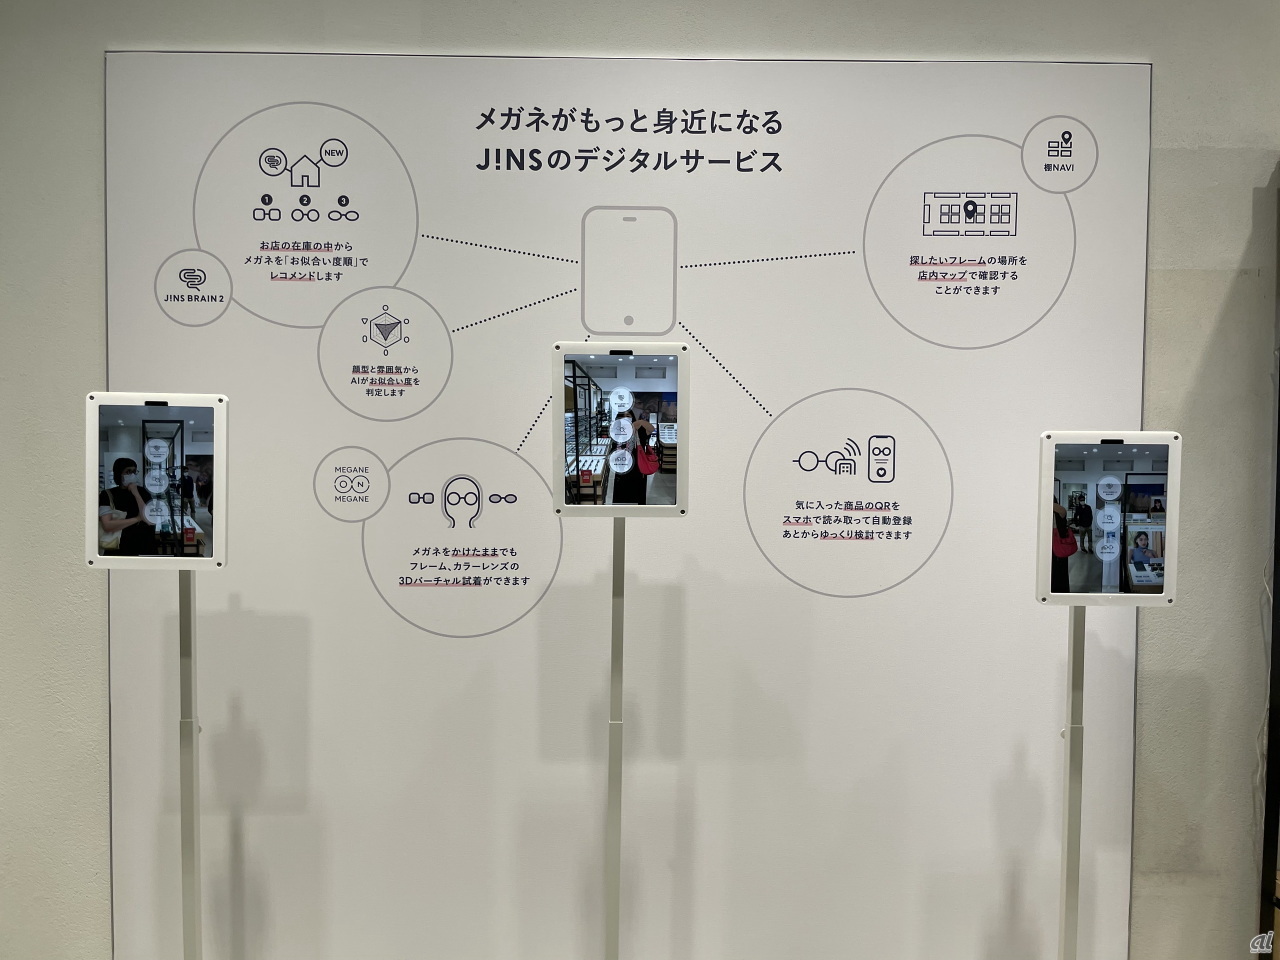 店内に設置されたiPad。都内で3台並ぶのは、東京・吉祥寺のサンード店のみという